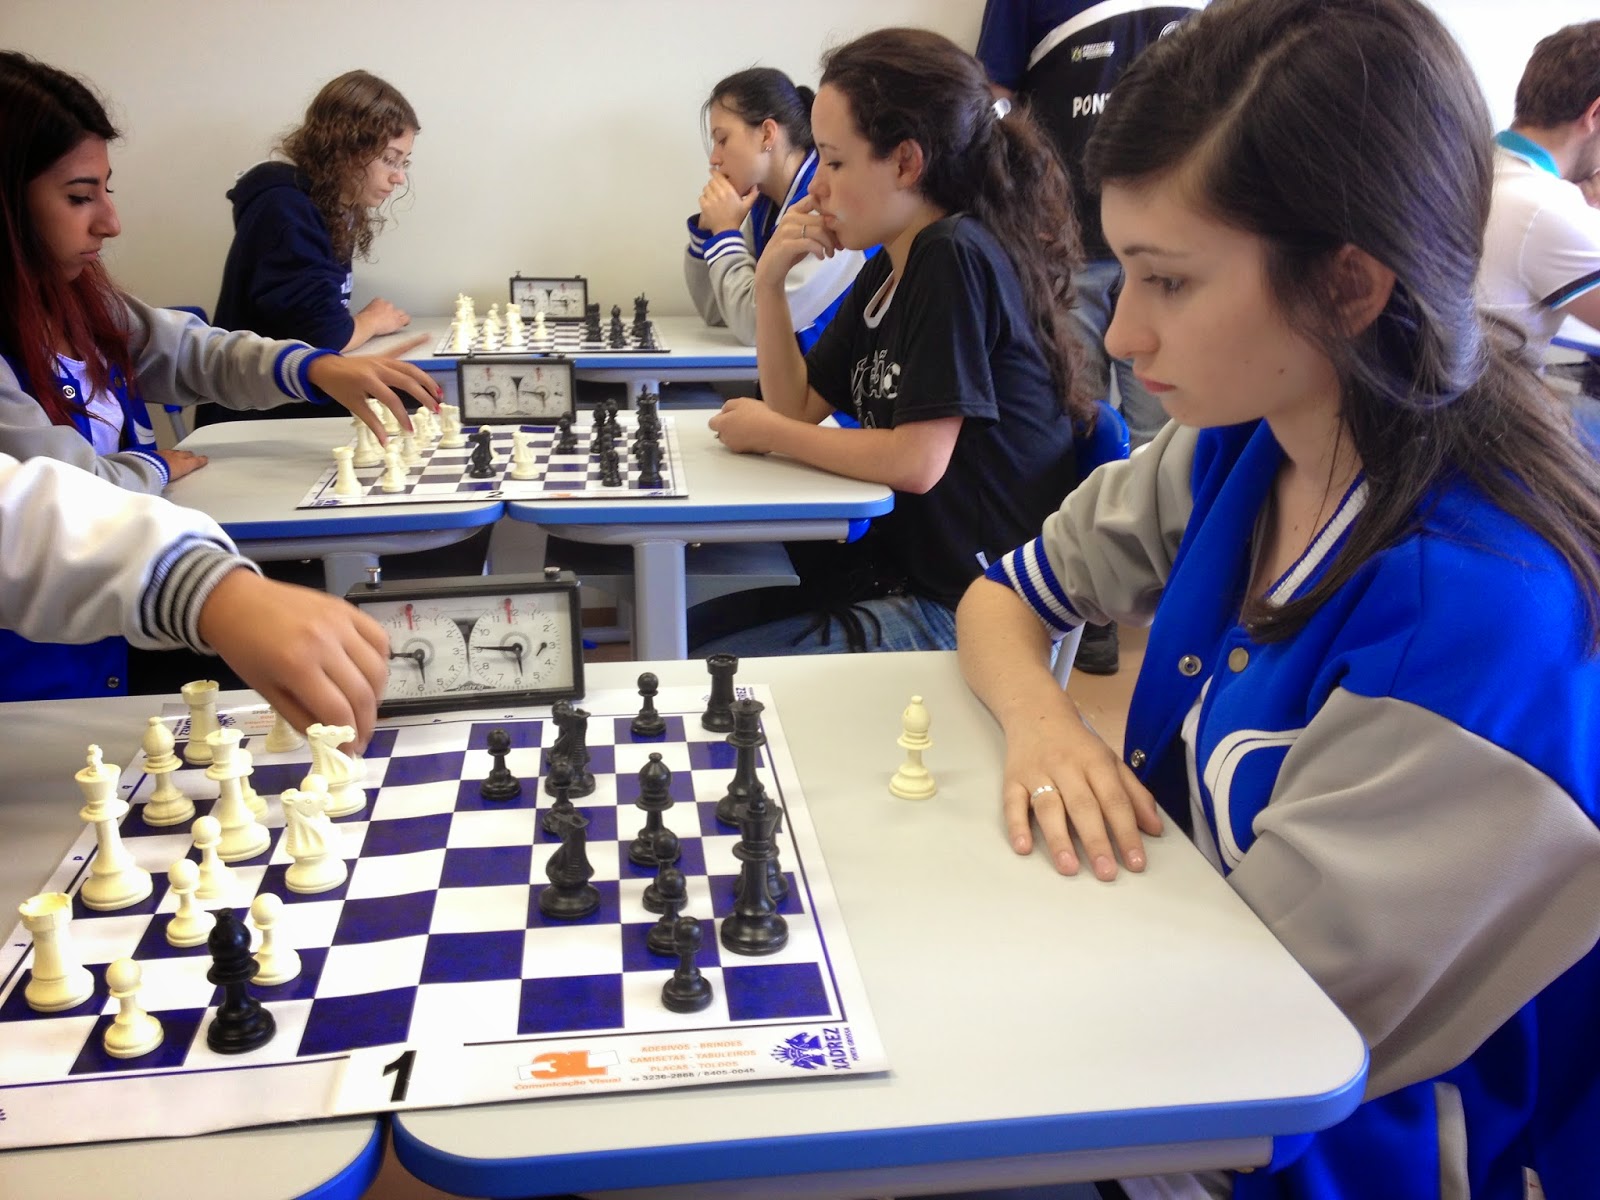 Ponta Grossa mantém hegemonia do xadrez nos 61º JAPs